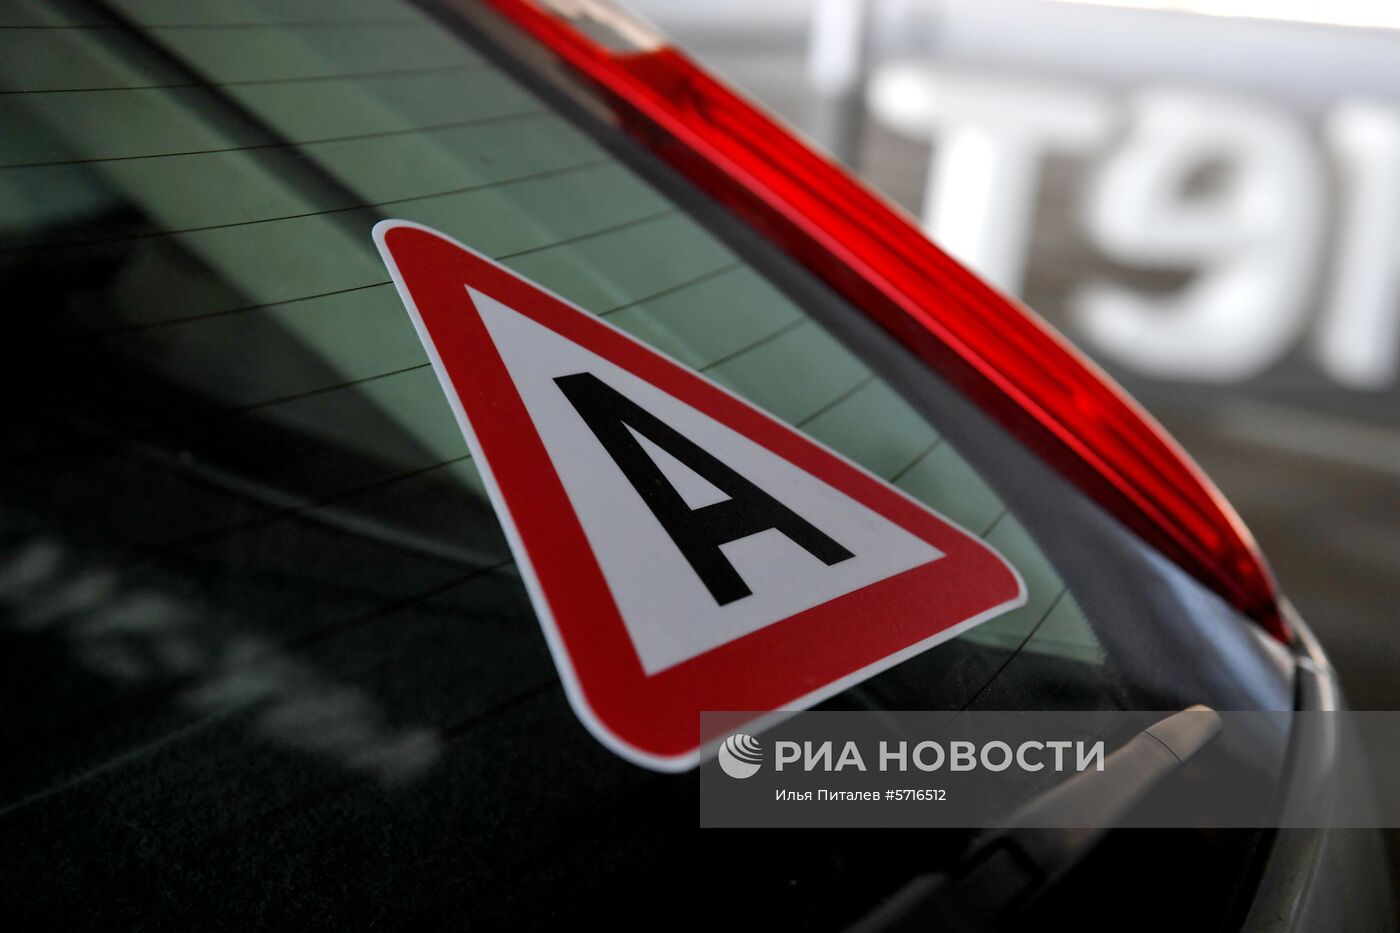 Беспилотные автомобили в России будут маркированы специальным знаком "А"